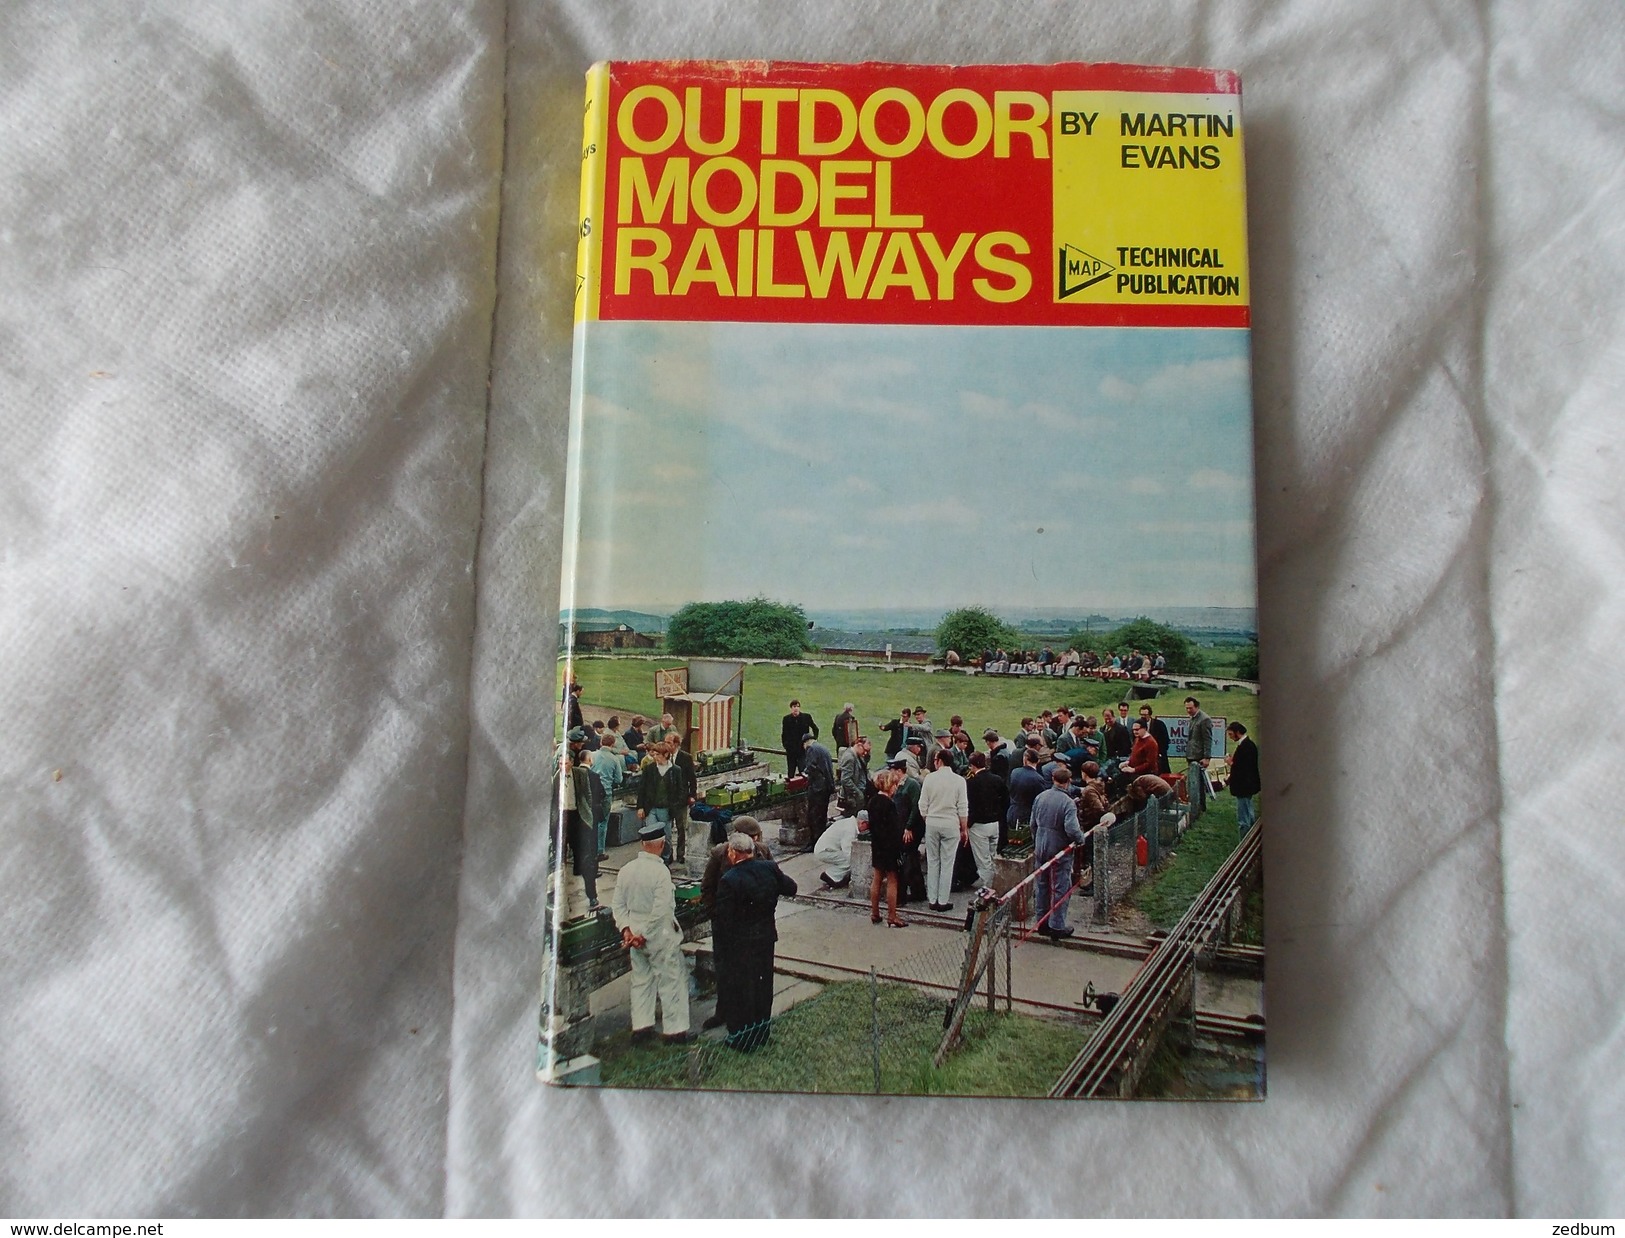 Outdoor Model Railways By Martin Evans - Libros Sobre Colecciones